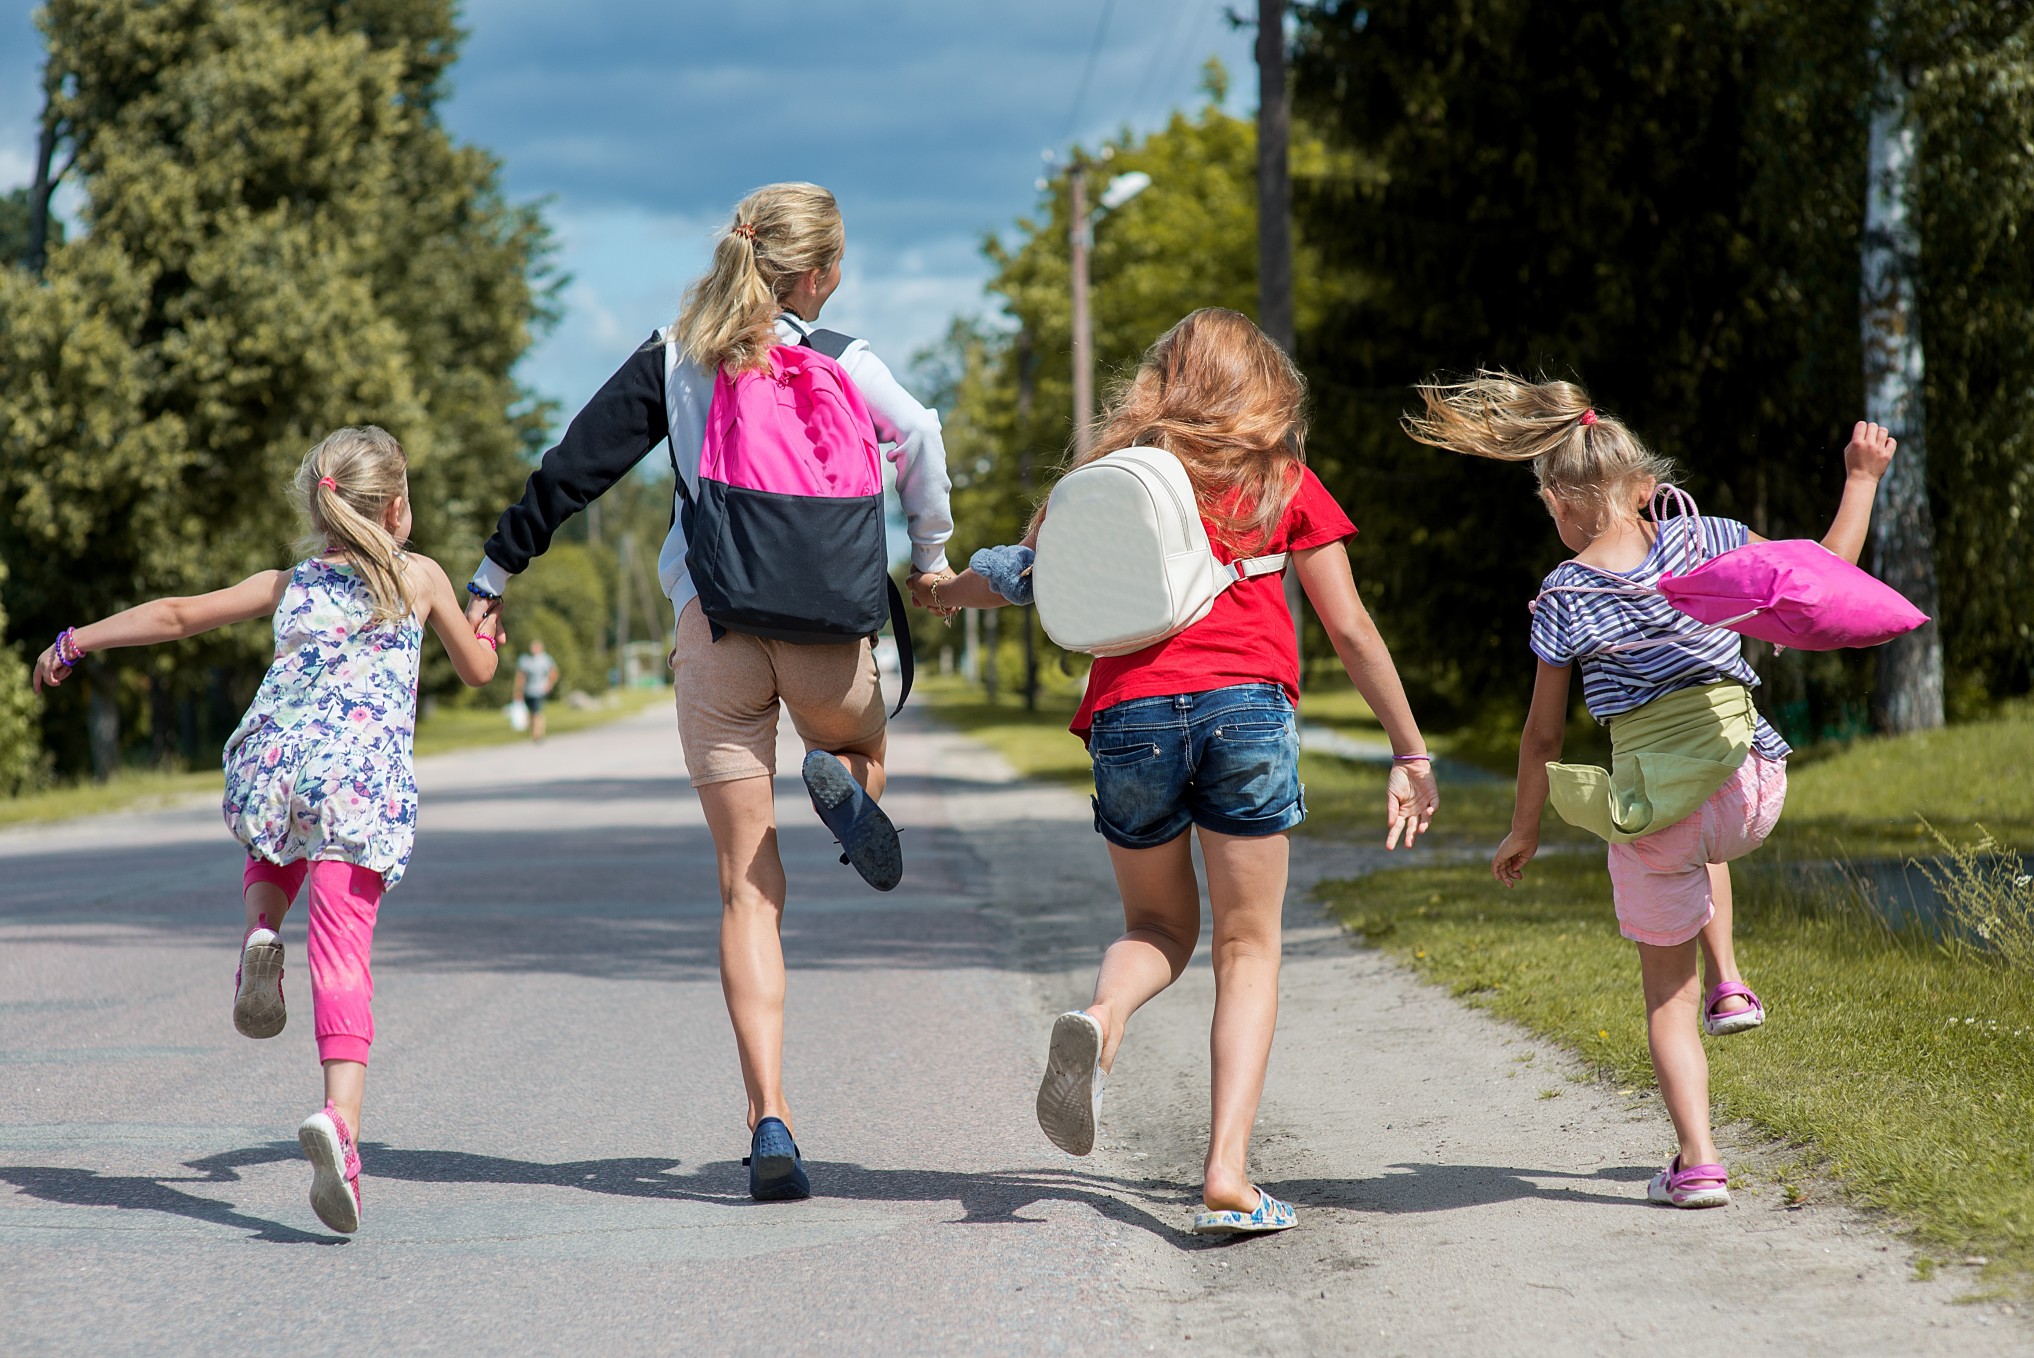 Gut gelaunte Kinder auf dem Weg in die Schule. Foto zelmabrezinska via Twenty20